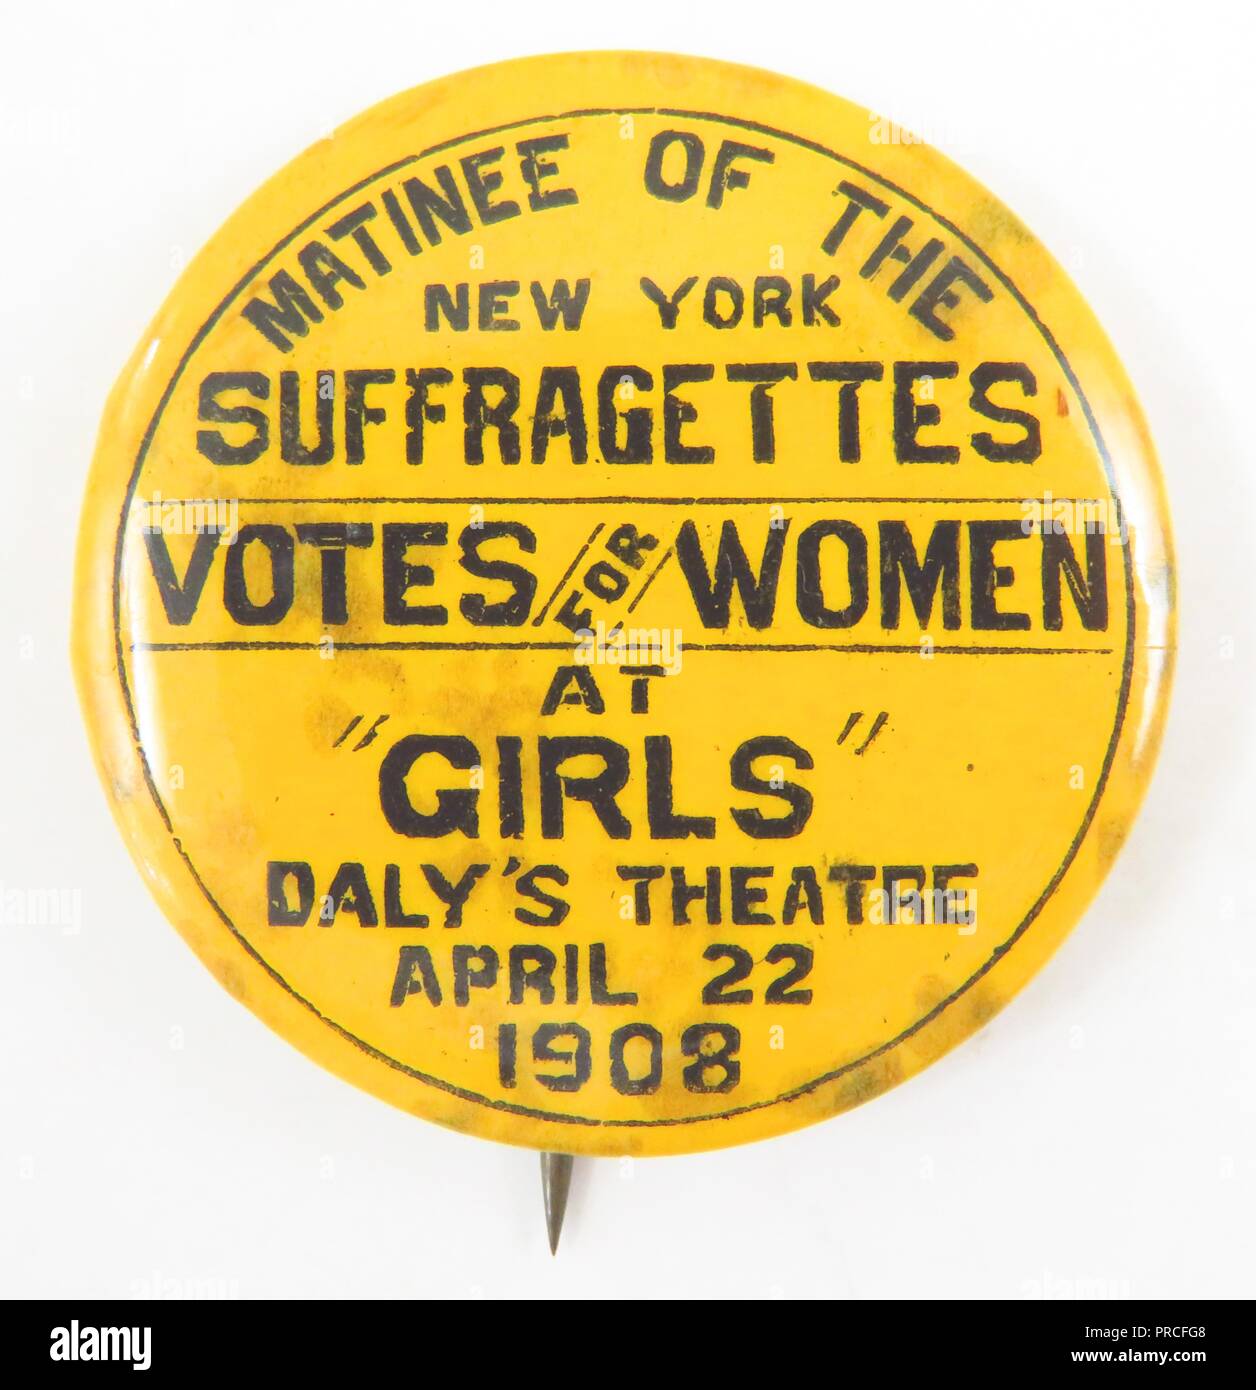 Gelb und Schwarz Wahlrecht - ära Pin, die für den amerikanischen Markt hergestellt, eine dramatische Inszenierung zu werben, die Suffragetten, Öffnung im Daly's Theatre in New York City, 1908. Fotografie von Emilia van Beugen. () Stockfoto